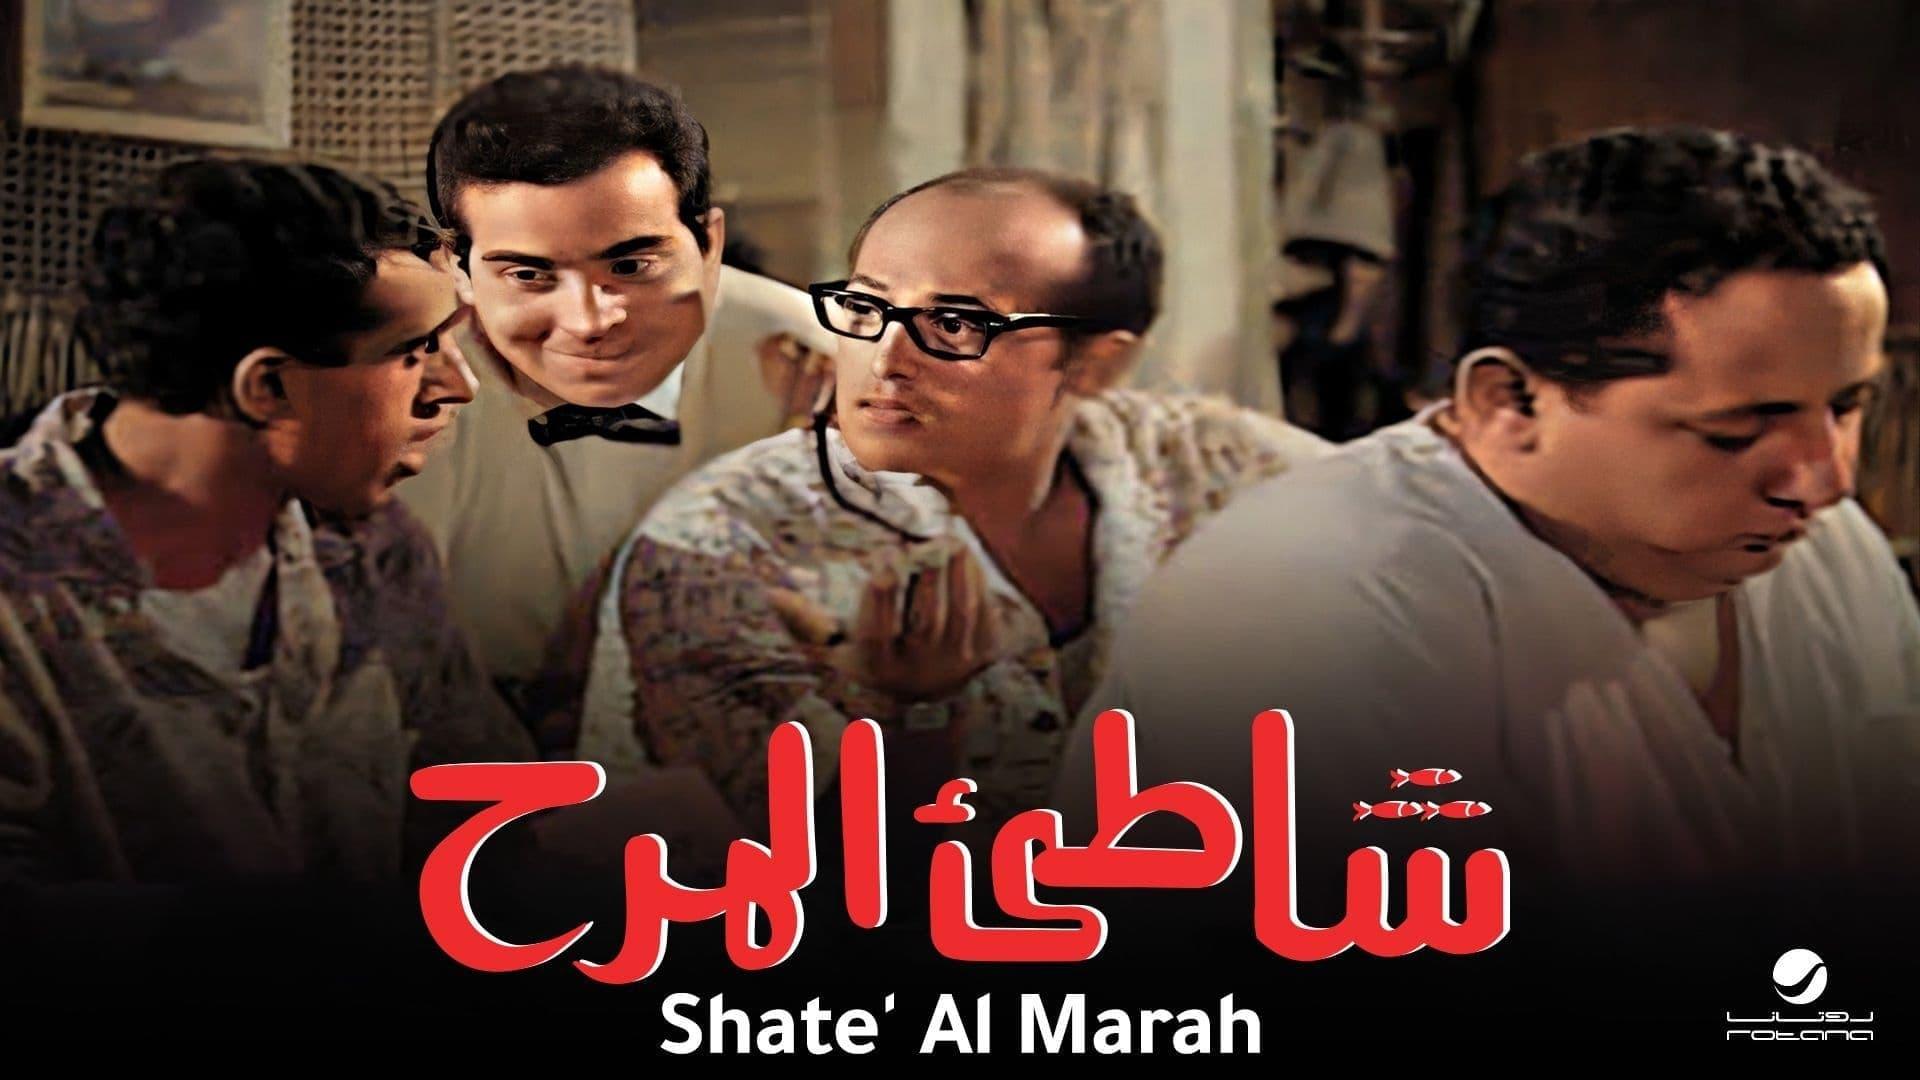 Shatte'e El-Marah backdrop